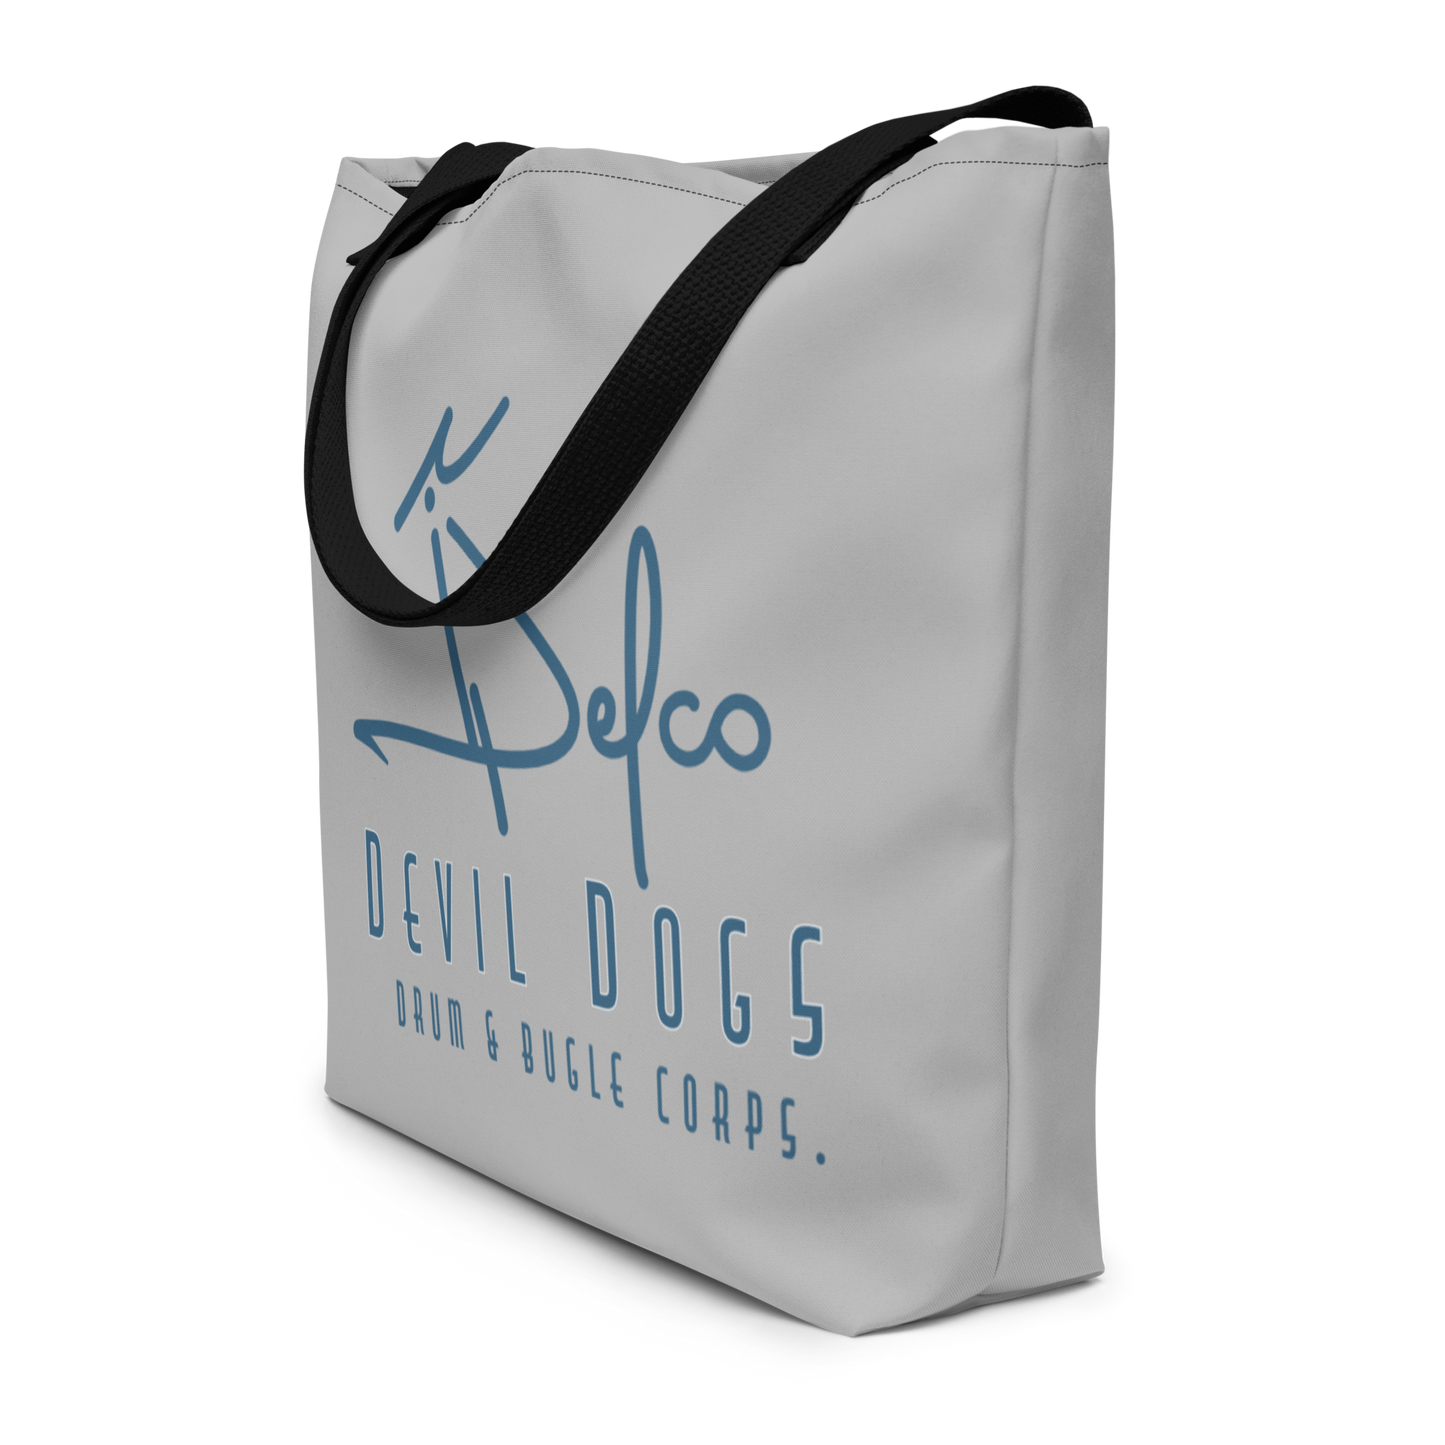 The Delco Devil Dogs tote bag